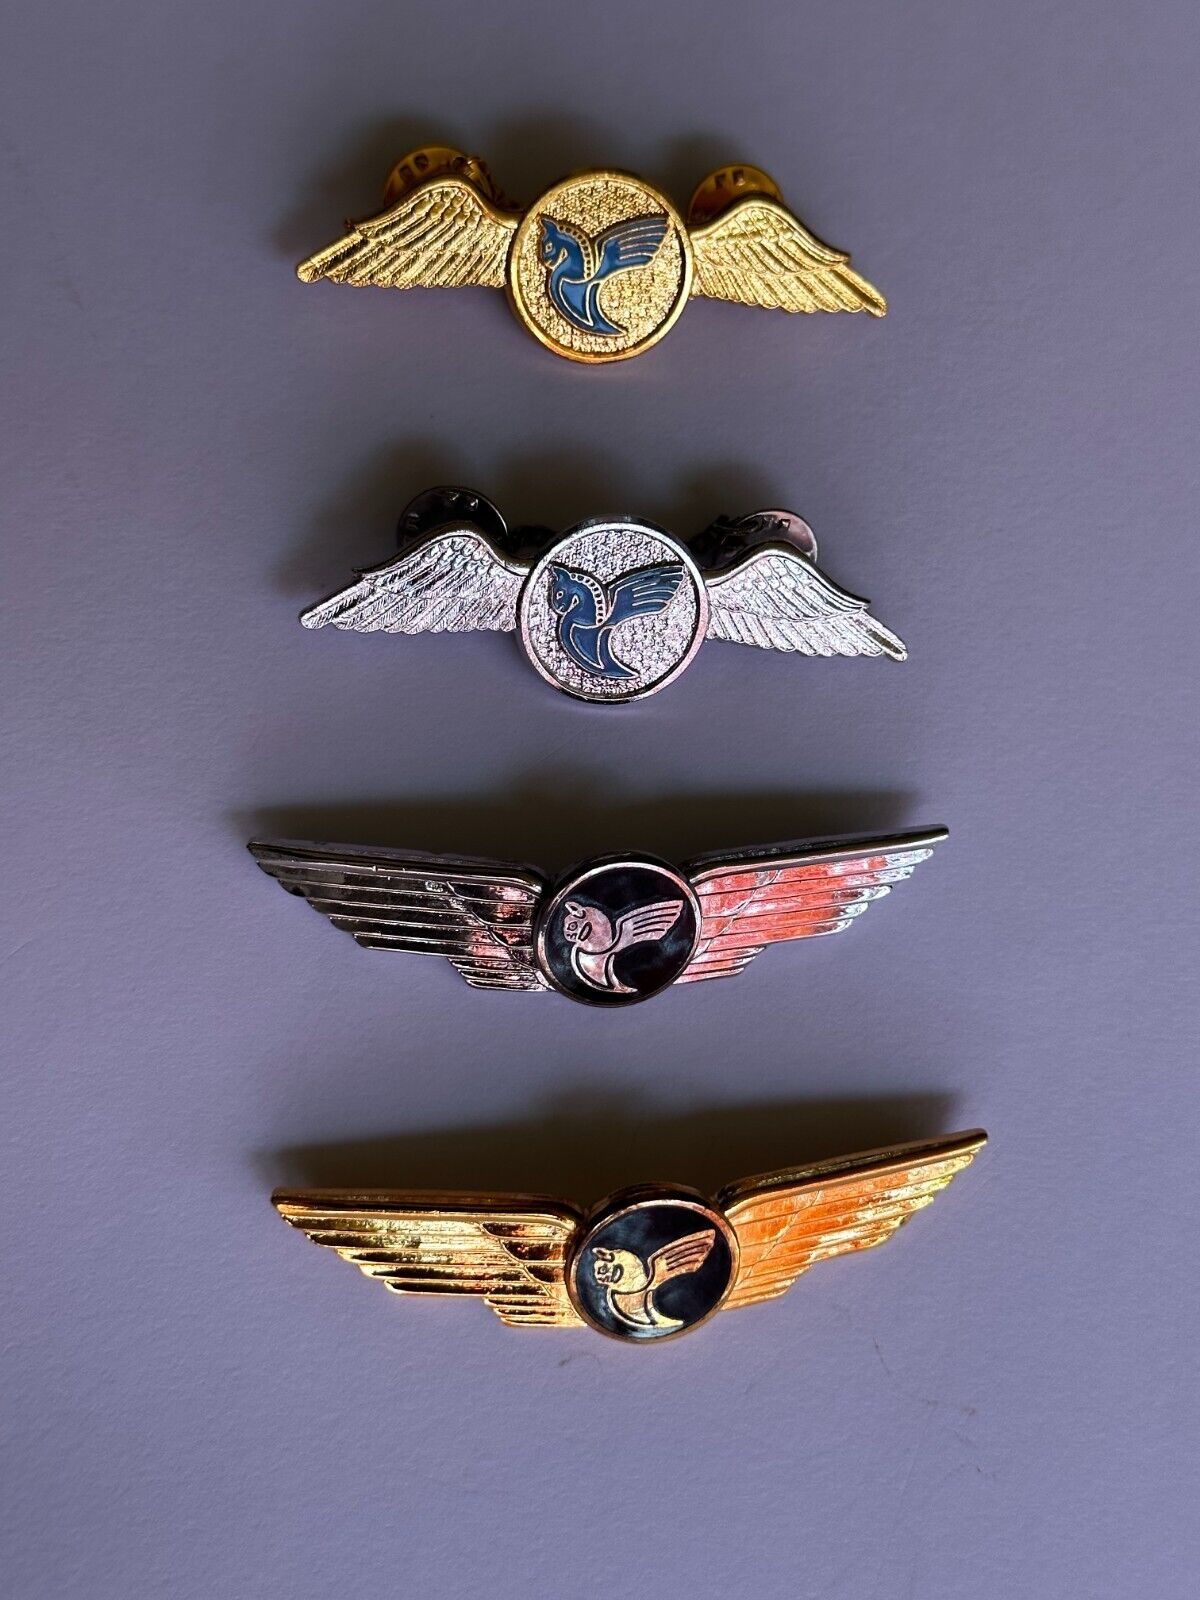 IRAN AIR Vintage Wings 1970